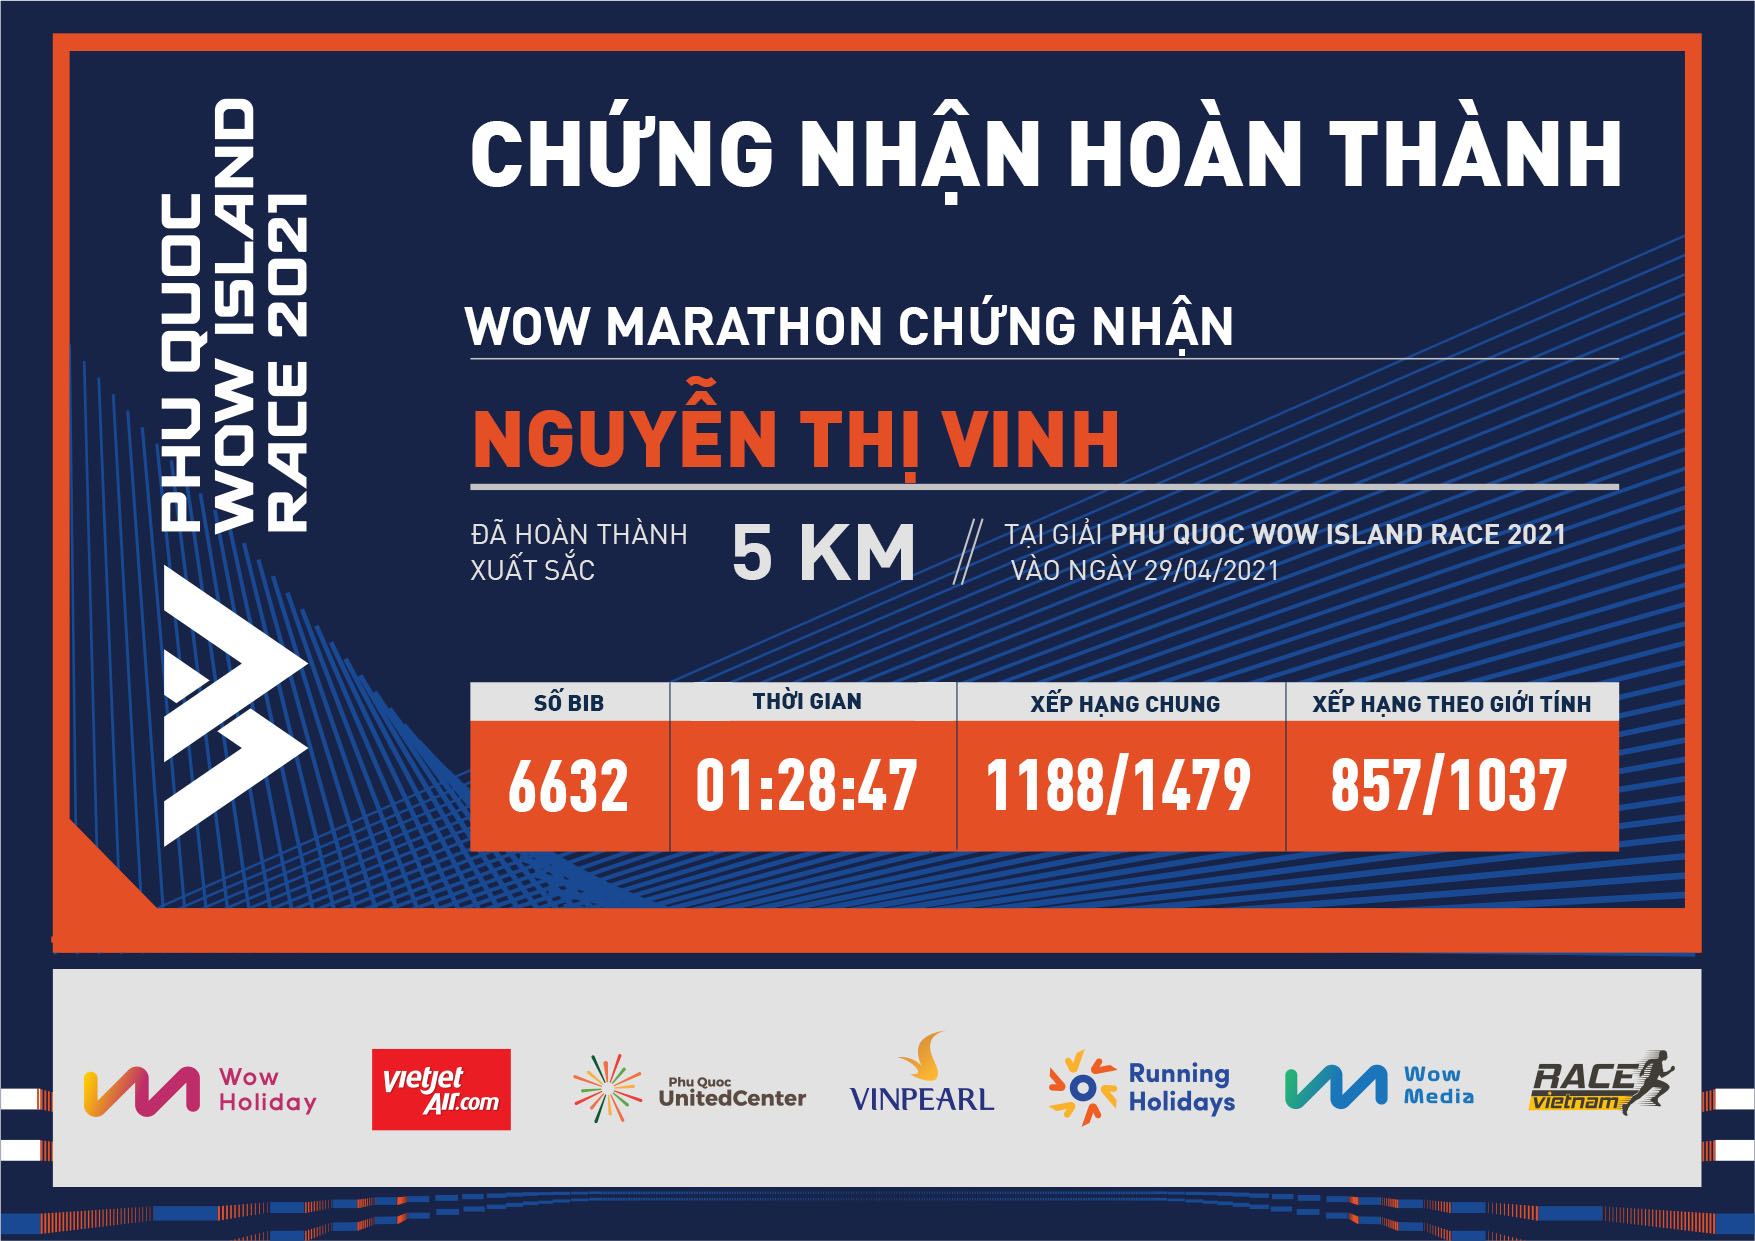 6632 - Nguyễn Thị Vinh